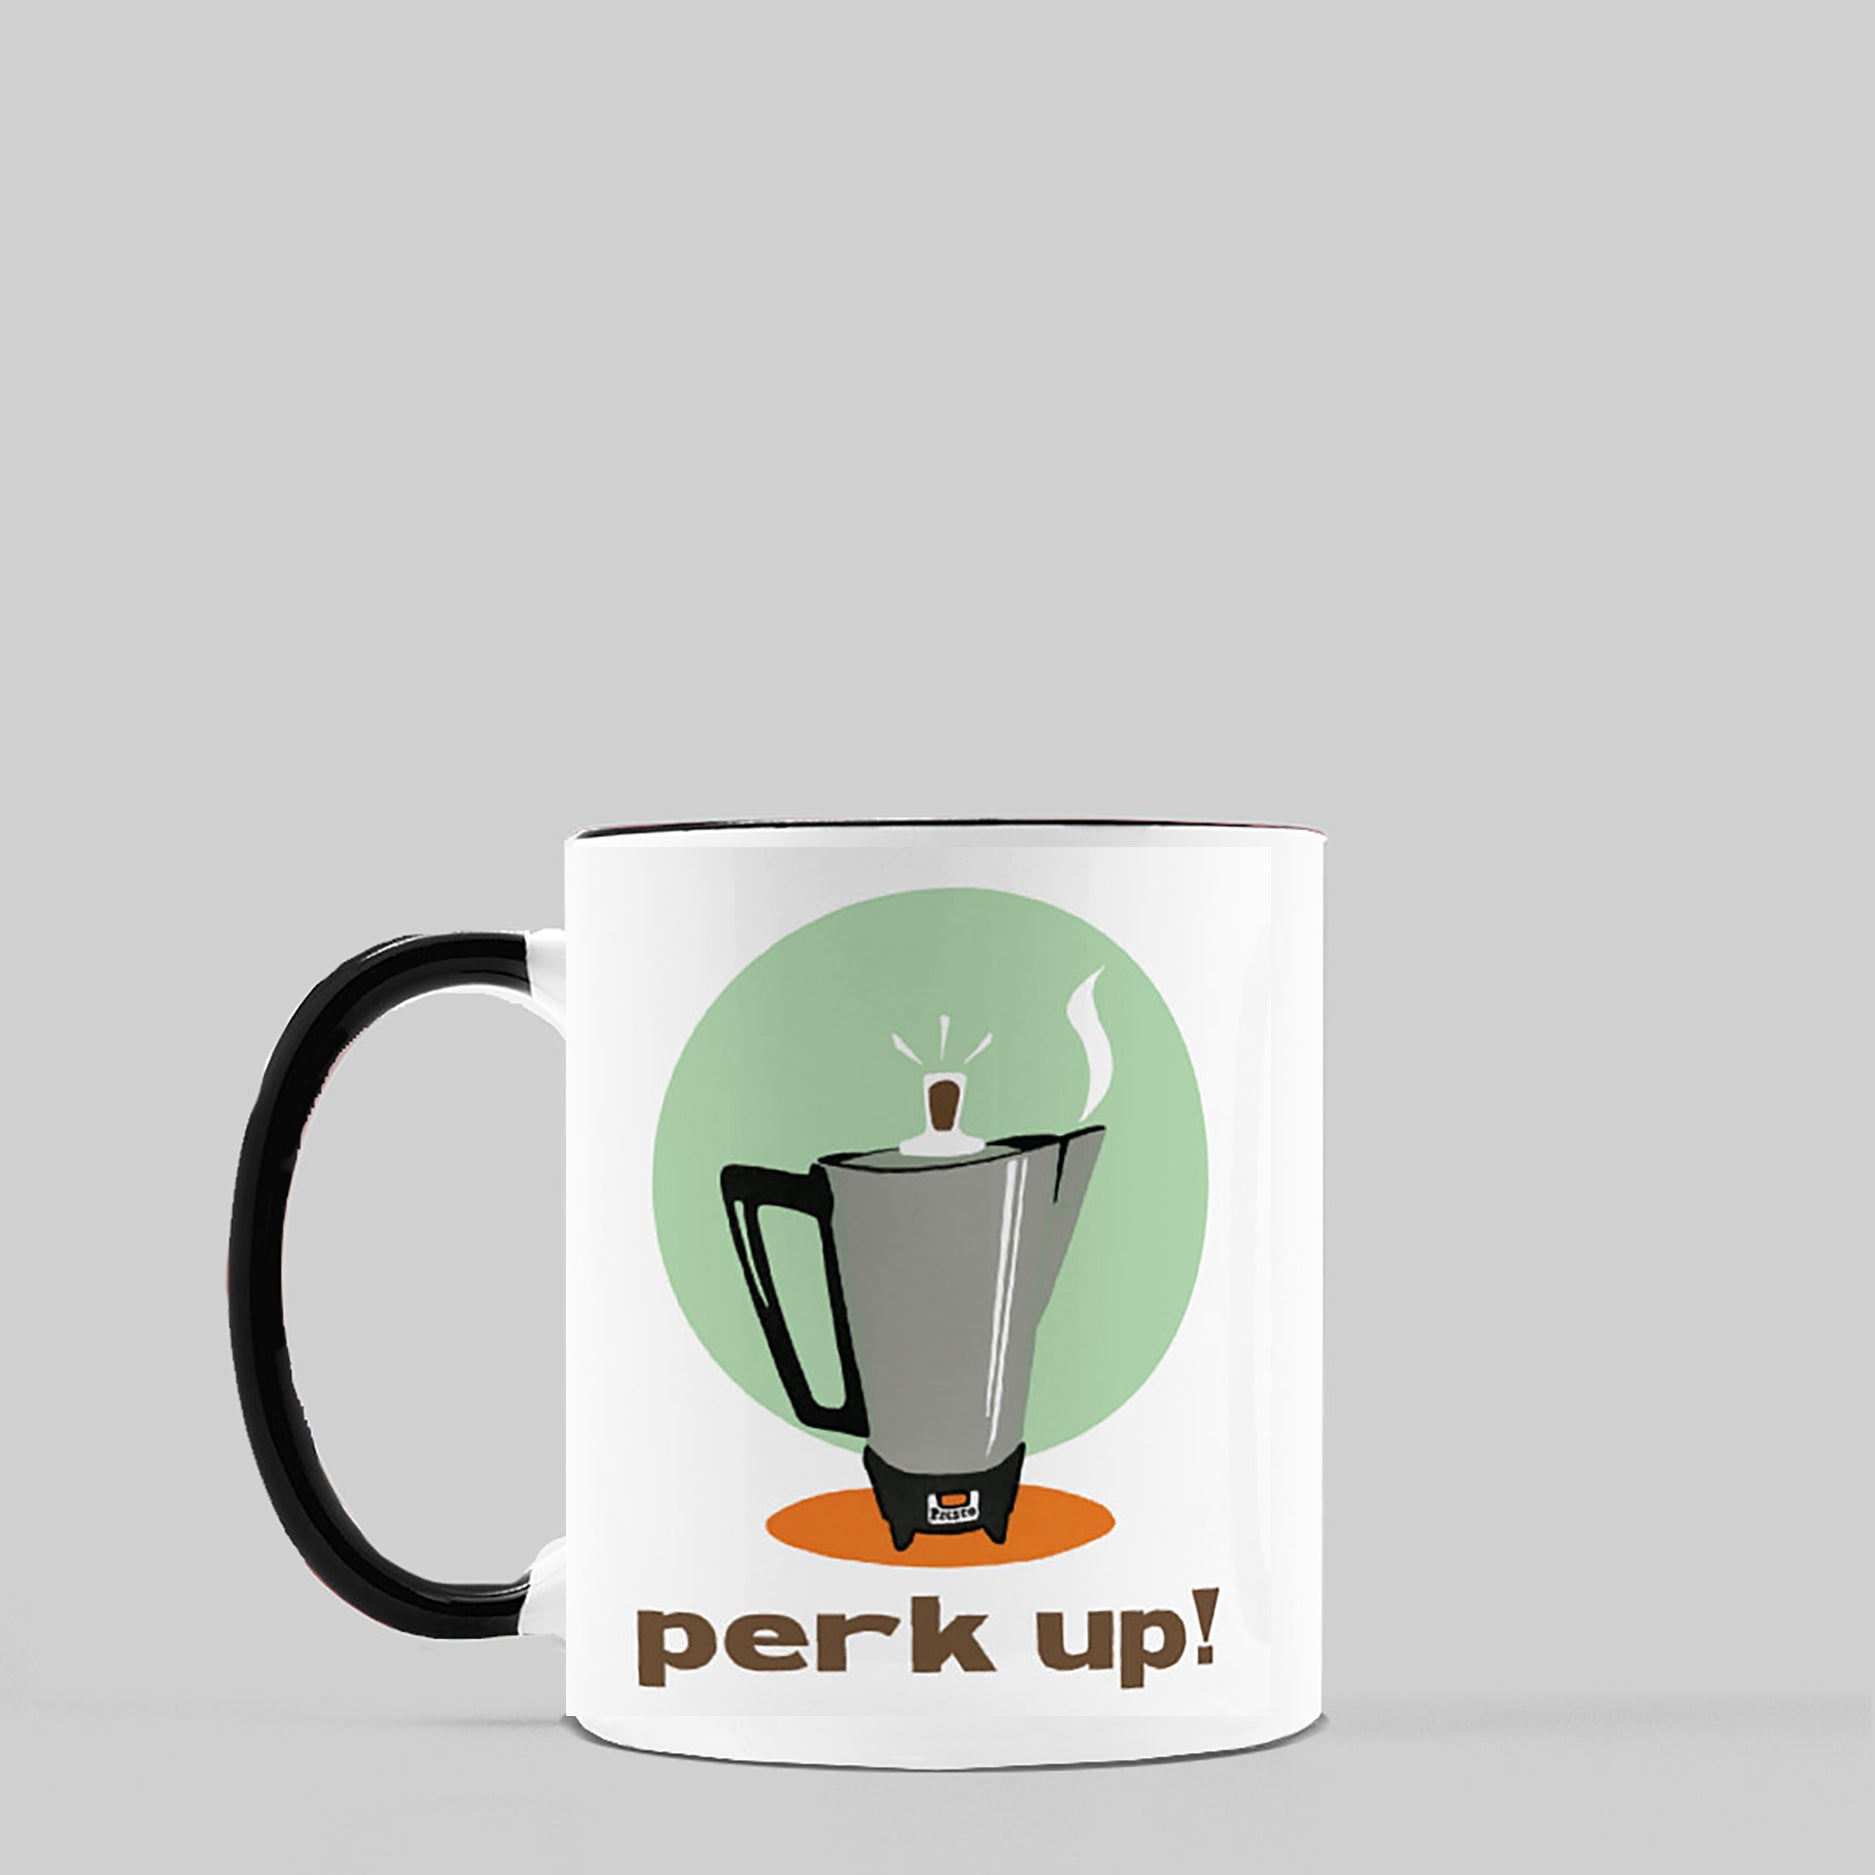 Perk Up! Ceramic Coffee Mug, 11oz